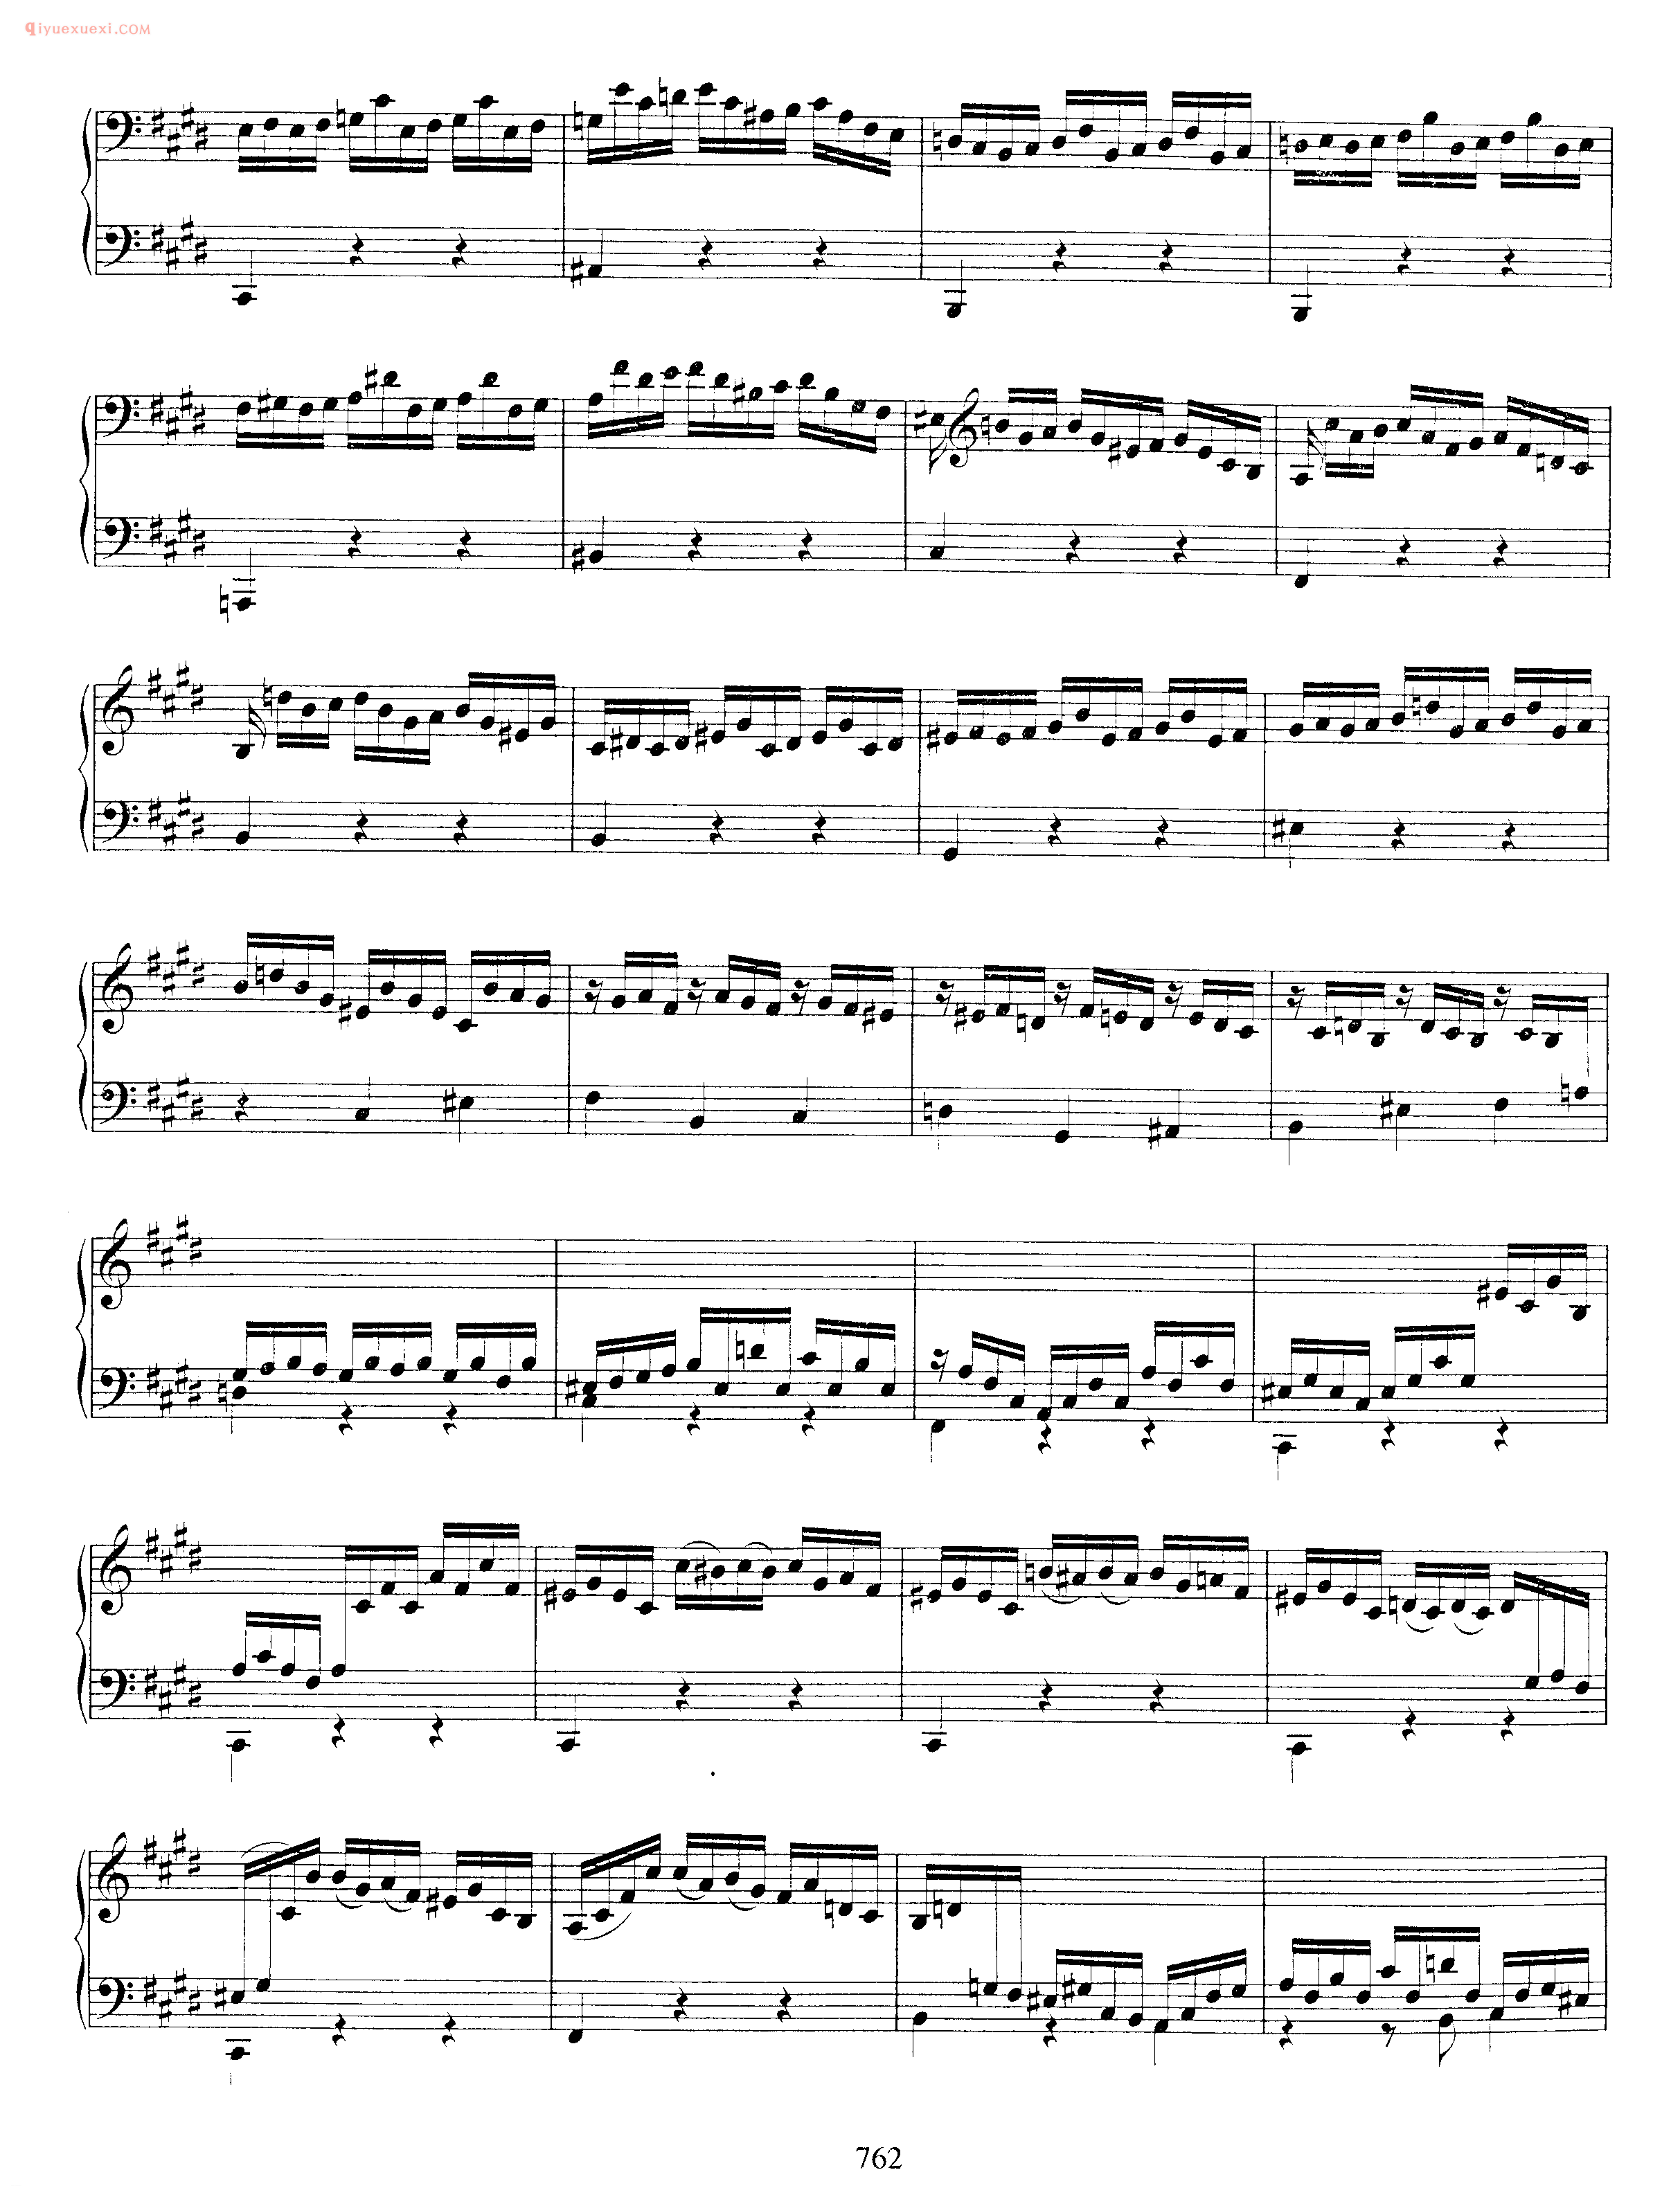 巴赫E大调第三无伴奏小提琴组曲_钢琴独奏版《Pratita_for Lute or Keyboard_in E Major BWV1006a》arranged from violin partita no.3 bwv 1006